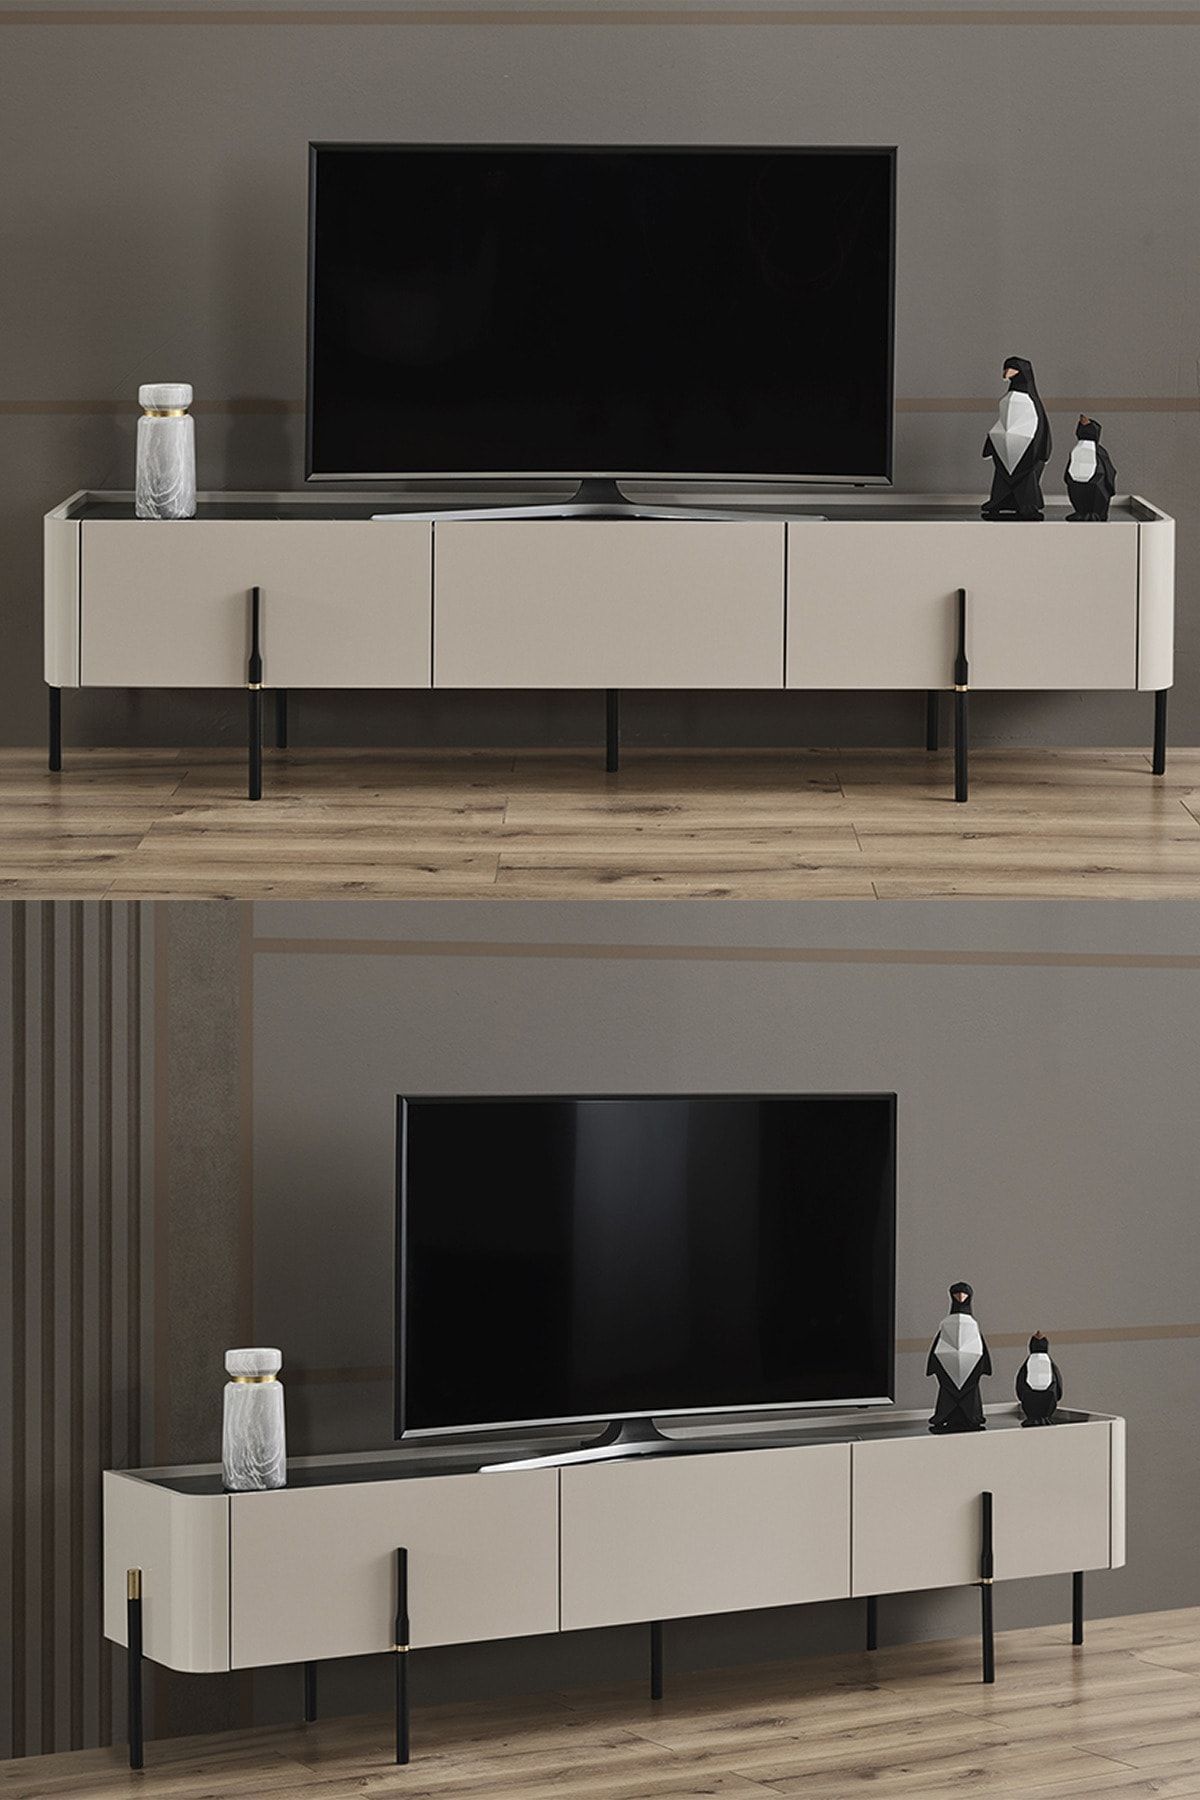 Santino 200 Tv Sehpası Premium Tasarım Televizyon Sehpası 200 cm 3 Çekmeceli